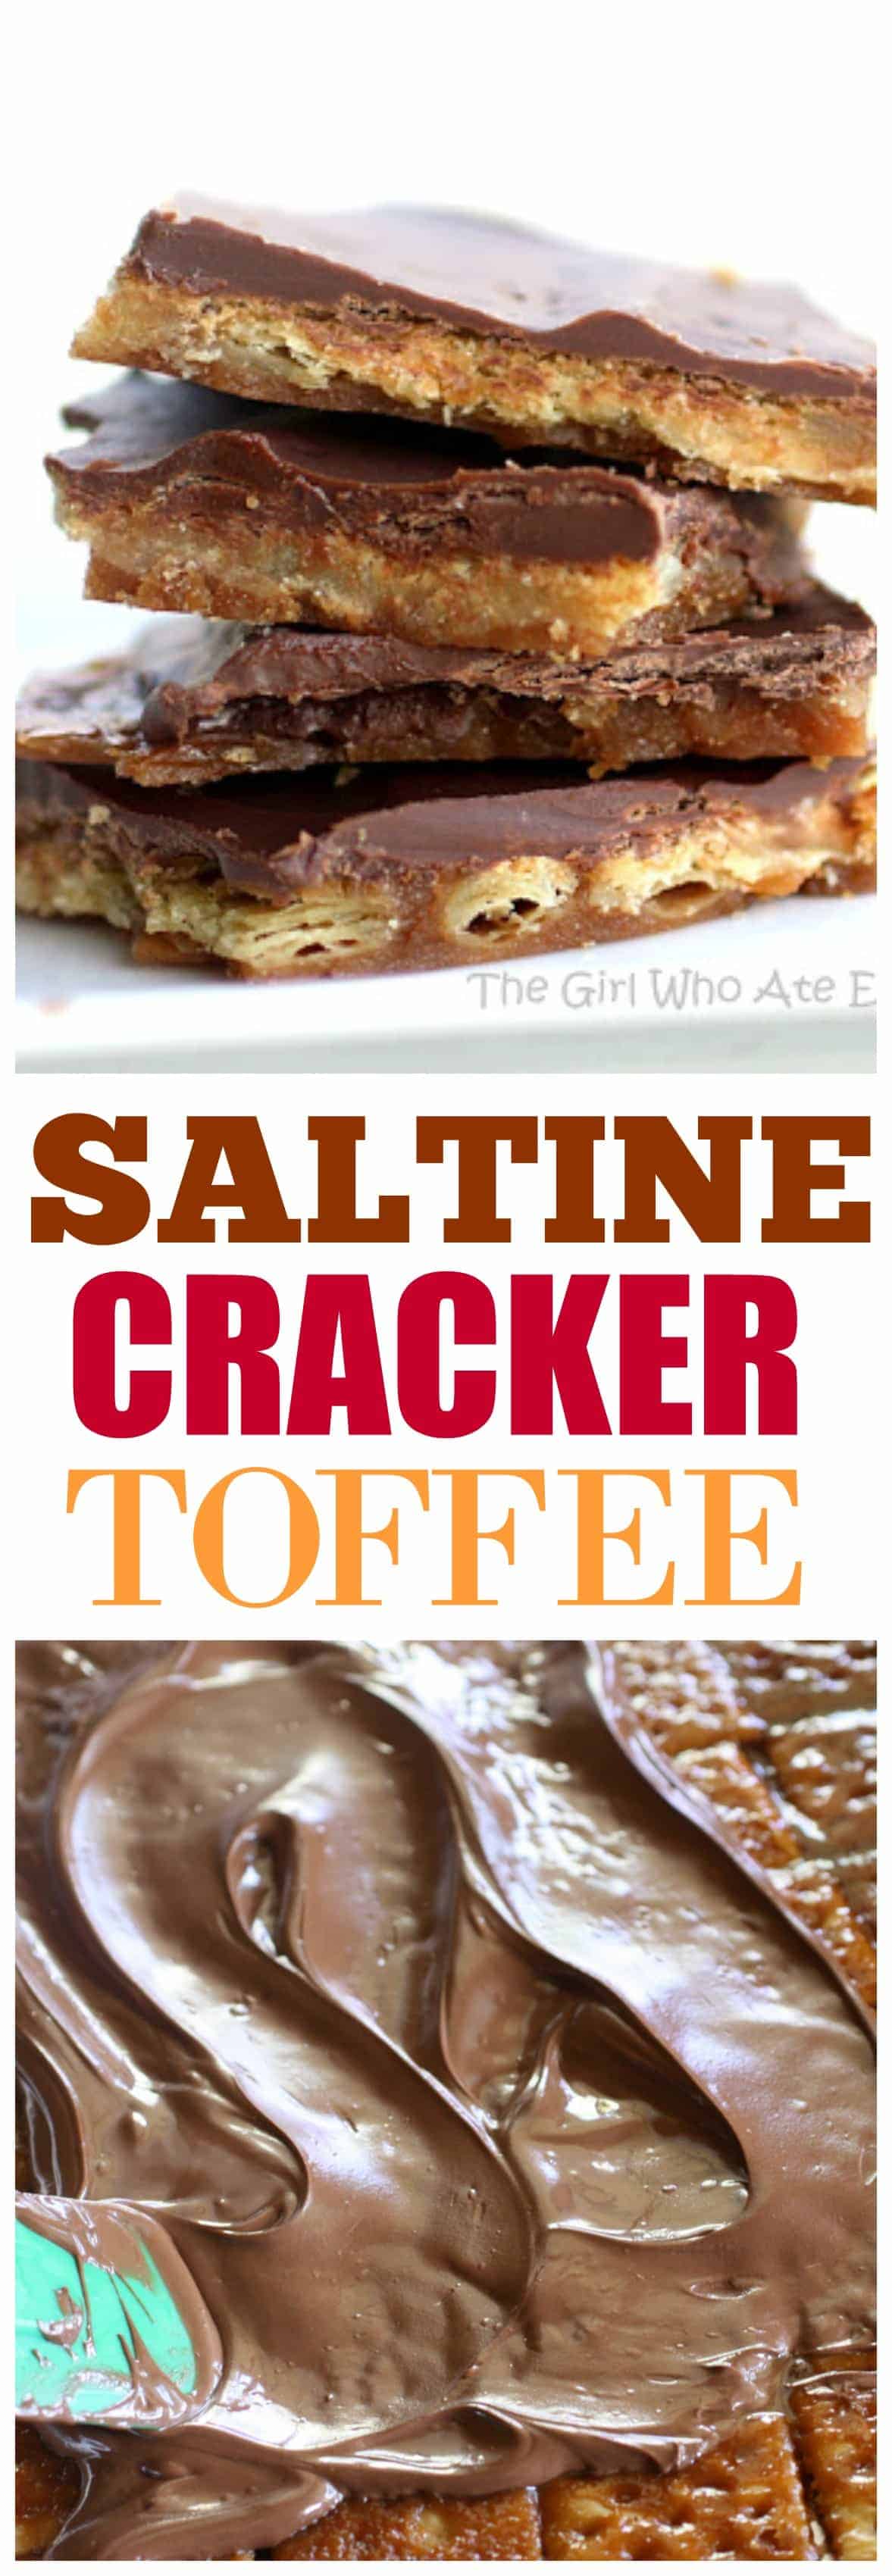 Saltine Cracker Toffee – la recette de ma grand-mère et elle plaît toujours à tout le monde.  #chocolat #saltine #cracker #toffee #christmascrack #dessert